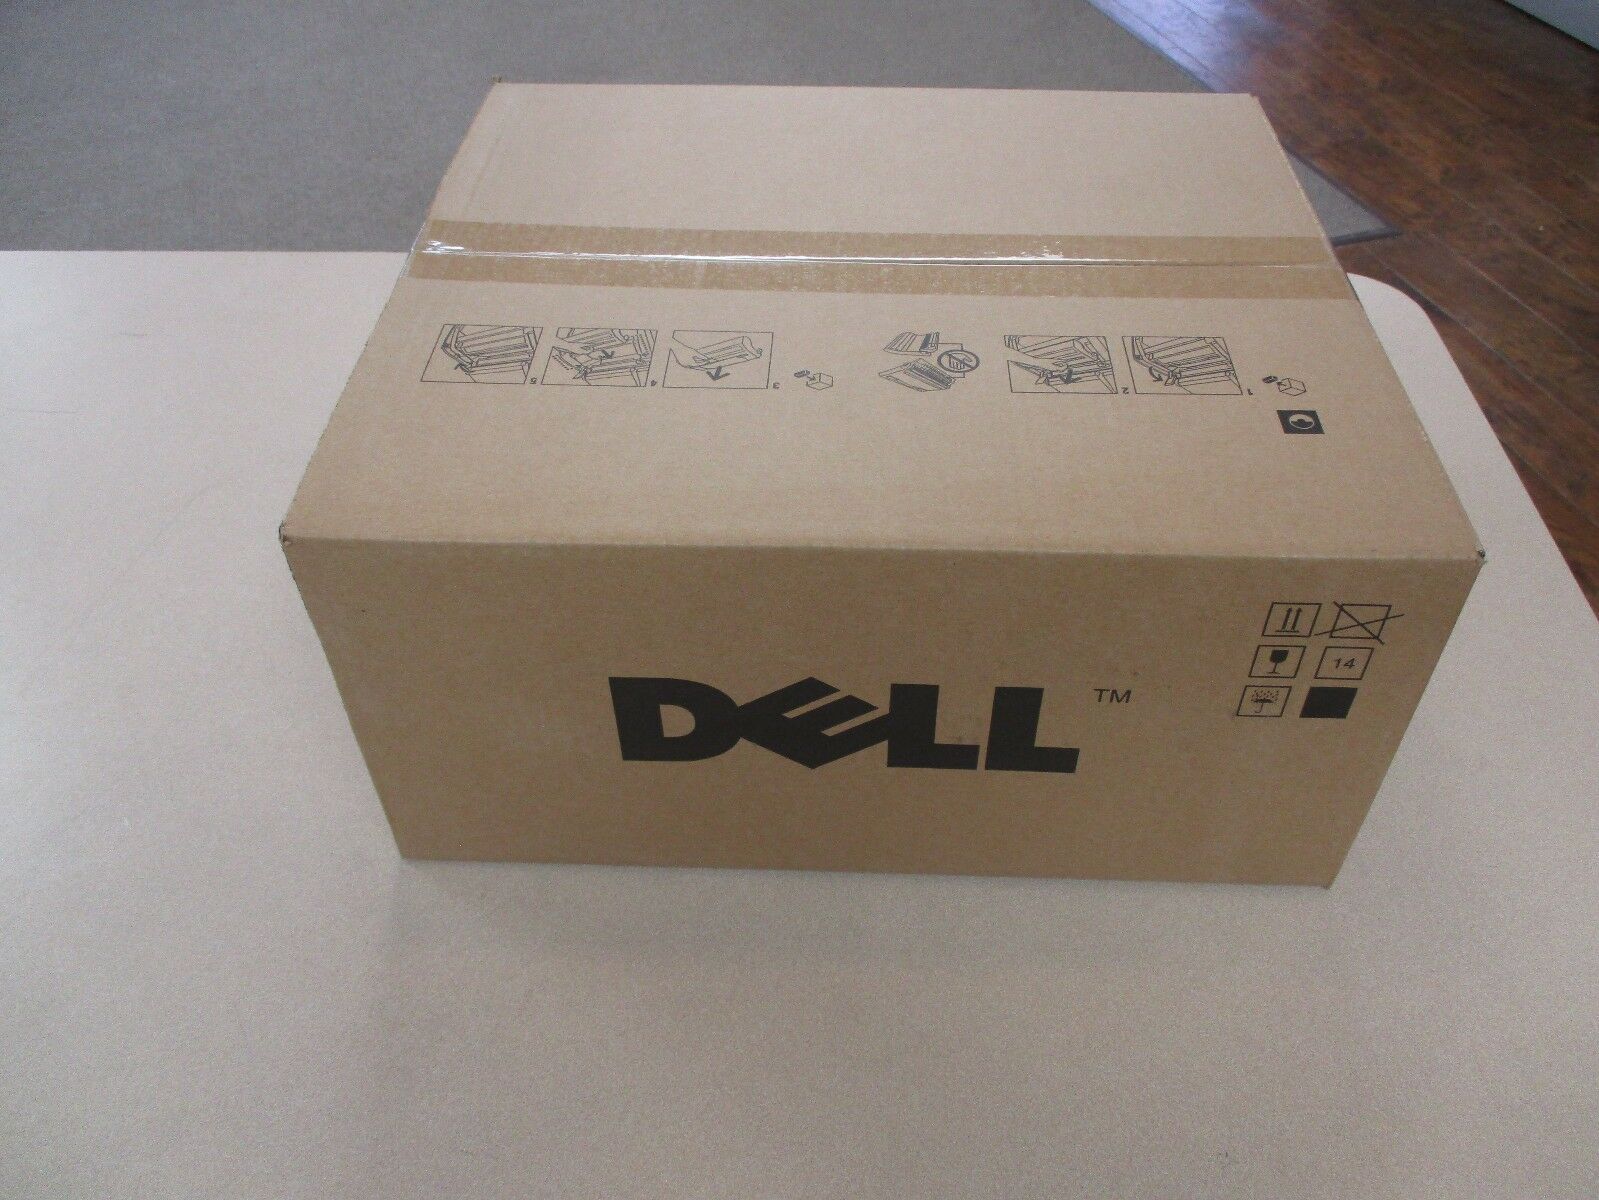 New Genuine Oem Dell P4866 Imaging Drum For 3000cn 3010cn 3100cn Laser Printer